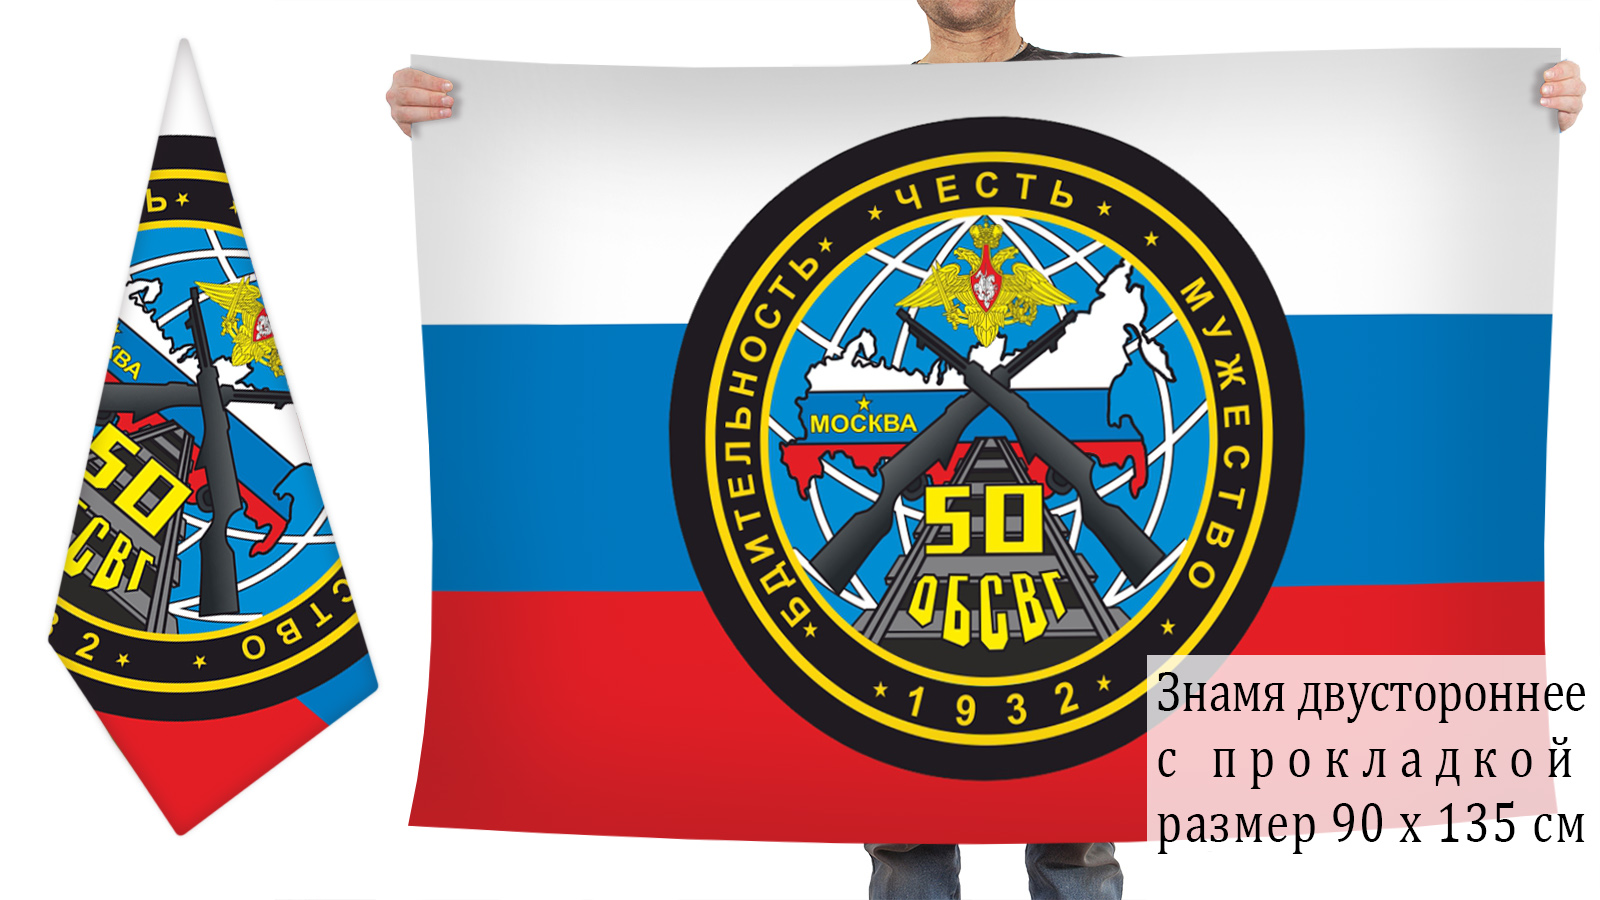 Двусторонний флаг 50 ОБСВГ